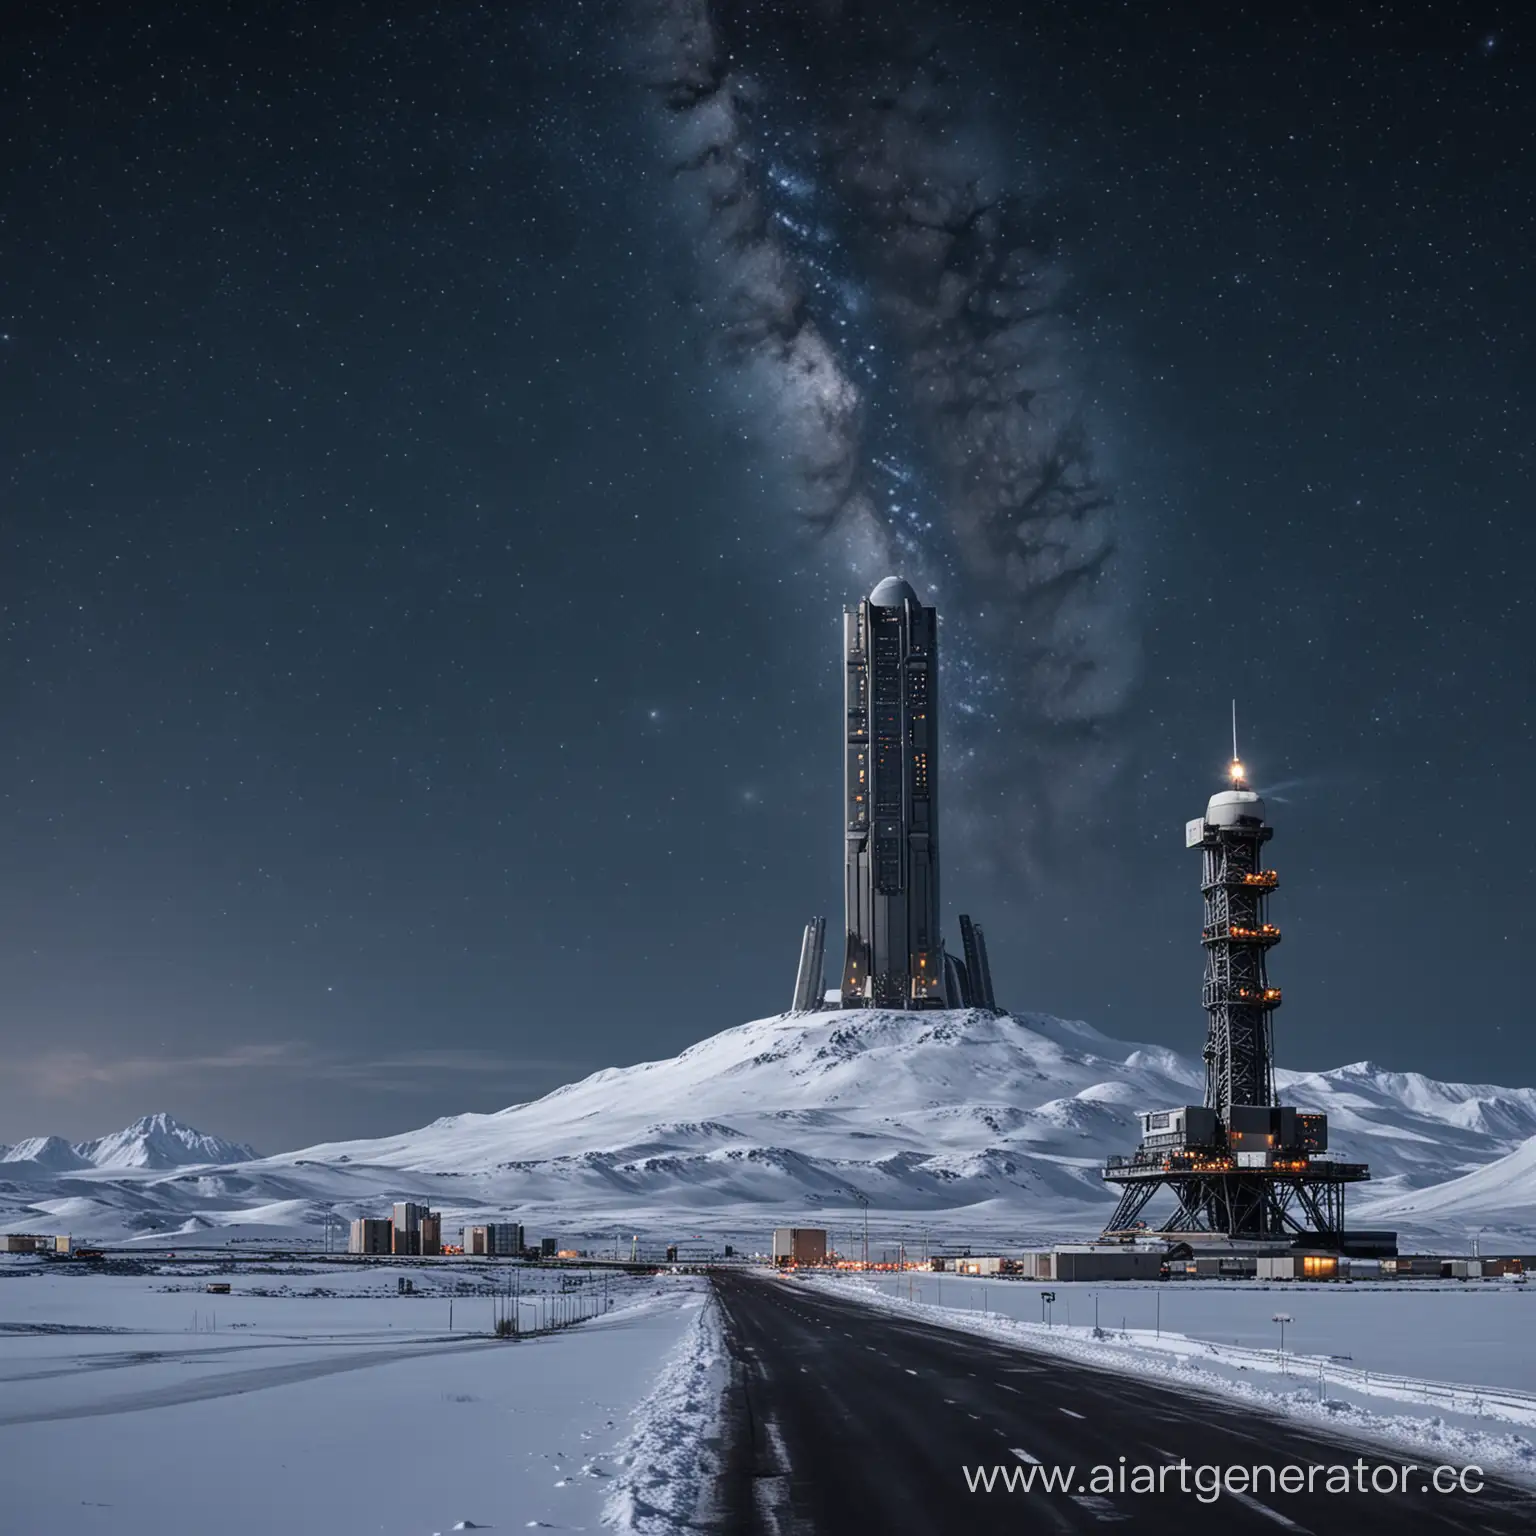 Военно-космическое и научно-исследовательское высокое здание с космодромом и взлетной полосой с сигнальными огнями на вершине горы на фоне звездного неба и снега ночью